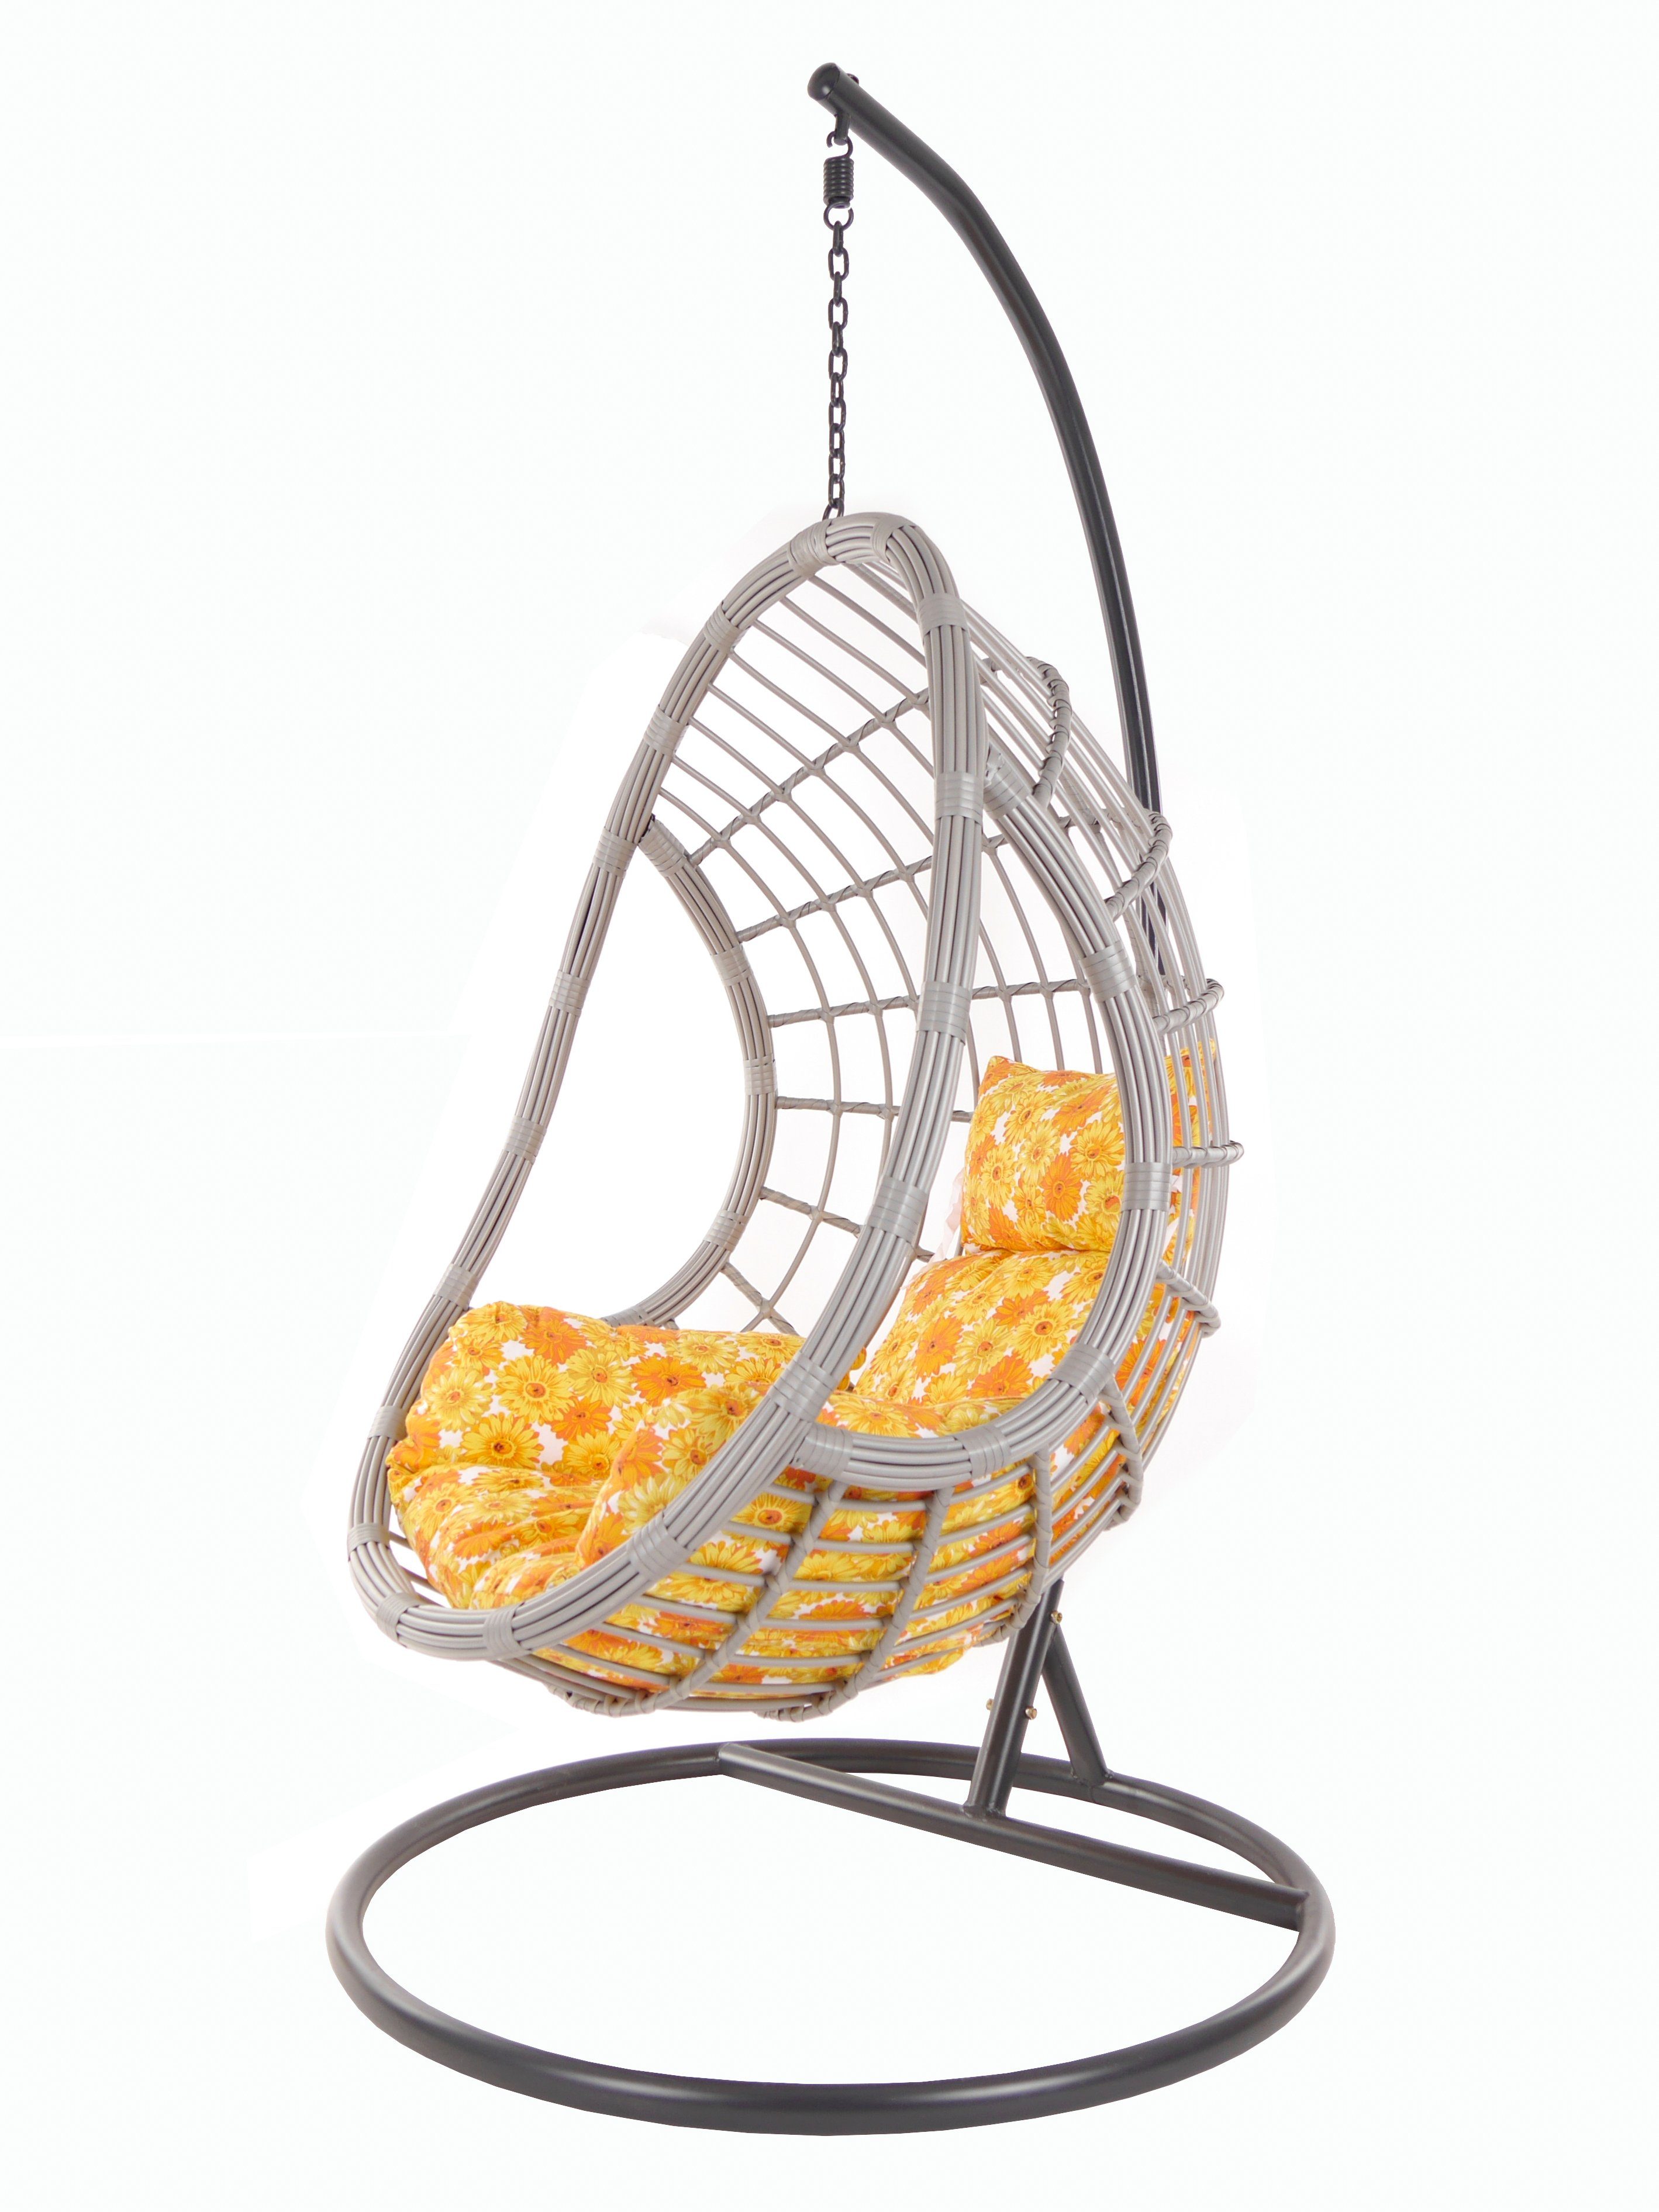 KIDEO Hängesessel PALMANOVA lightgrey, Swing Chair, Loungemöbel, Hängesessel mit Gestell und Kissen sonnenblumen (2300 sunflower)